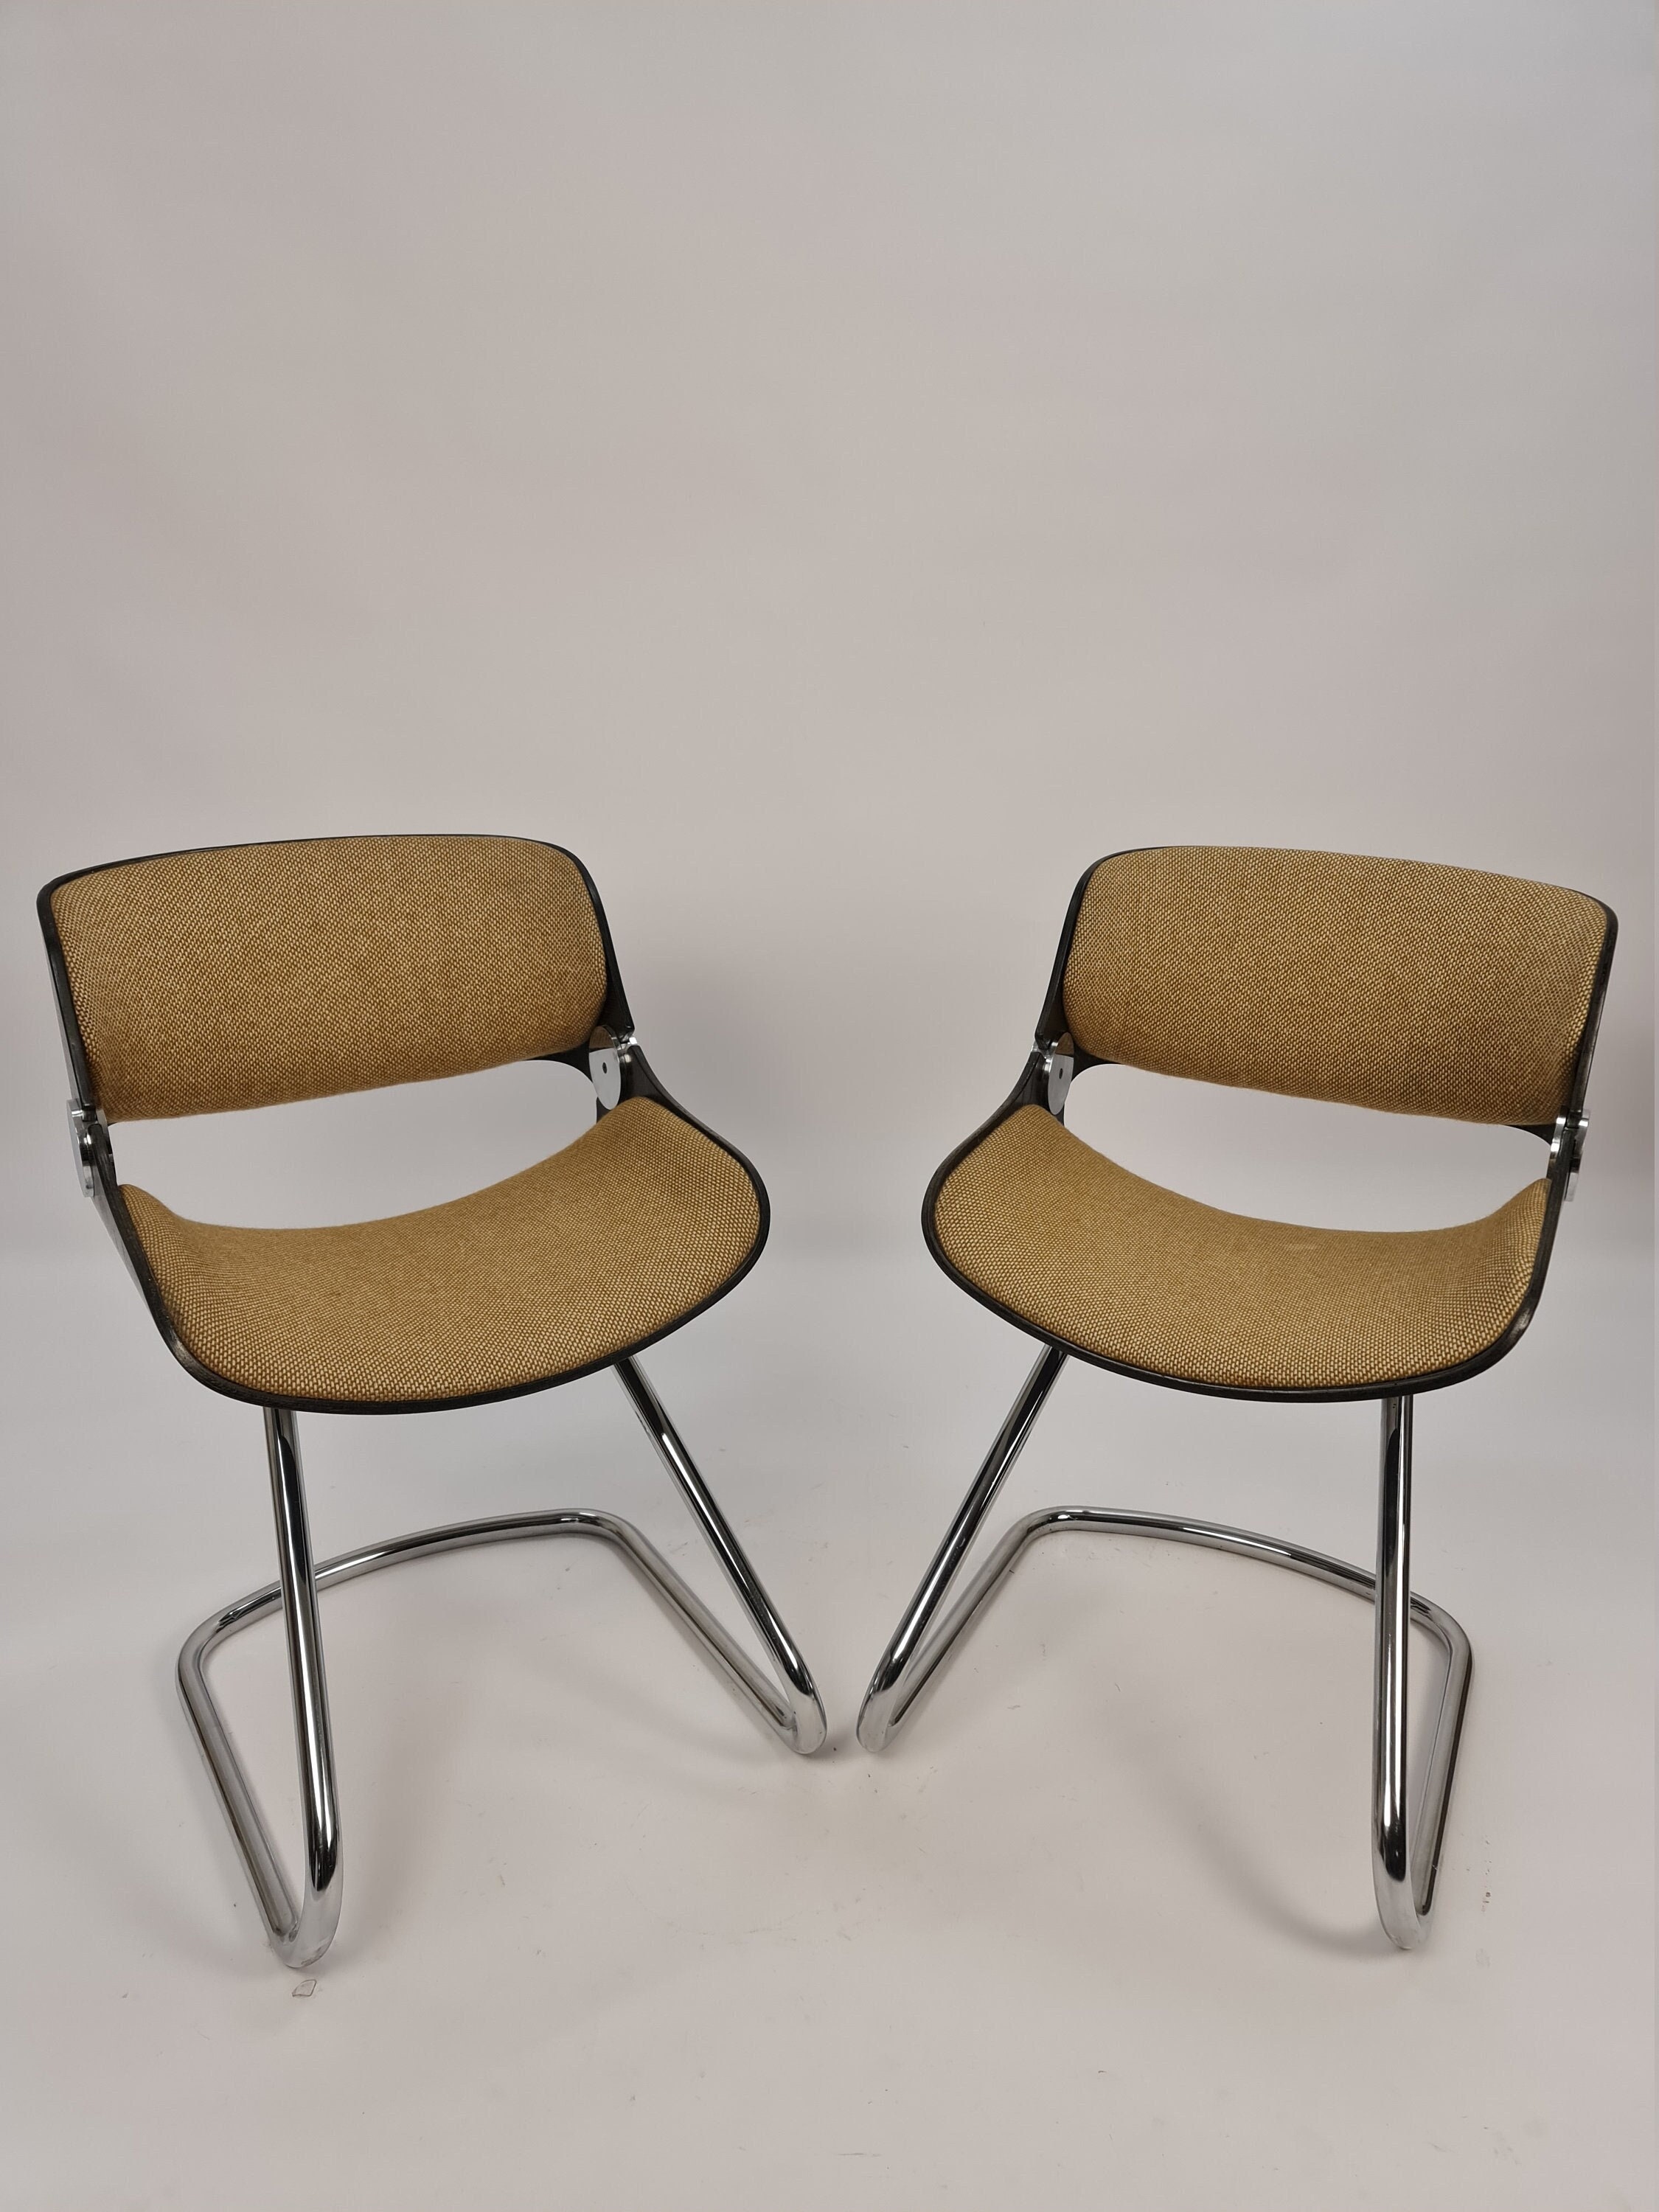 2 Set Vintage Stühle Von Etienne Fermigier 1970 Space Age - Etsy